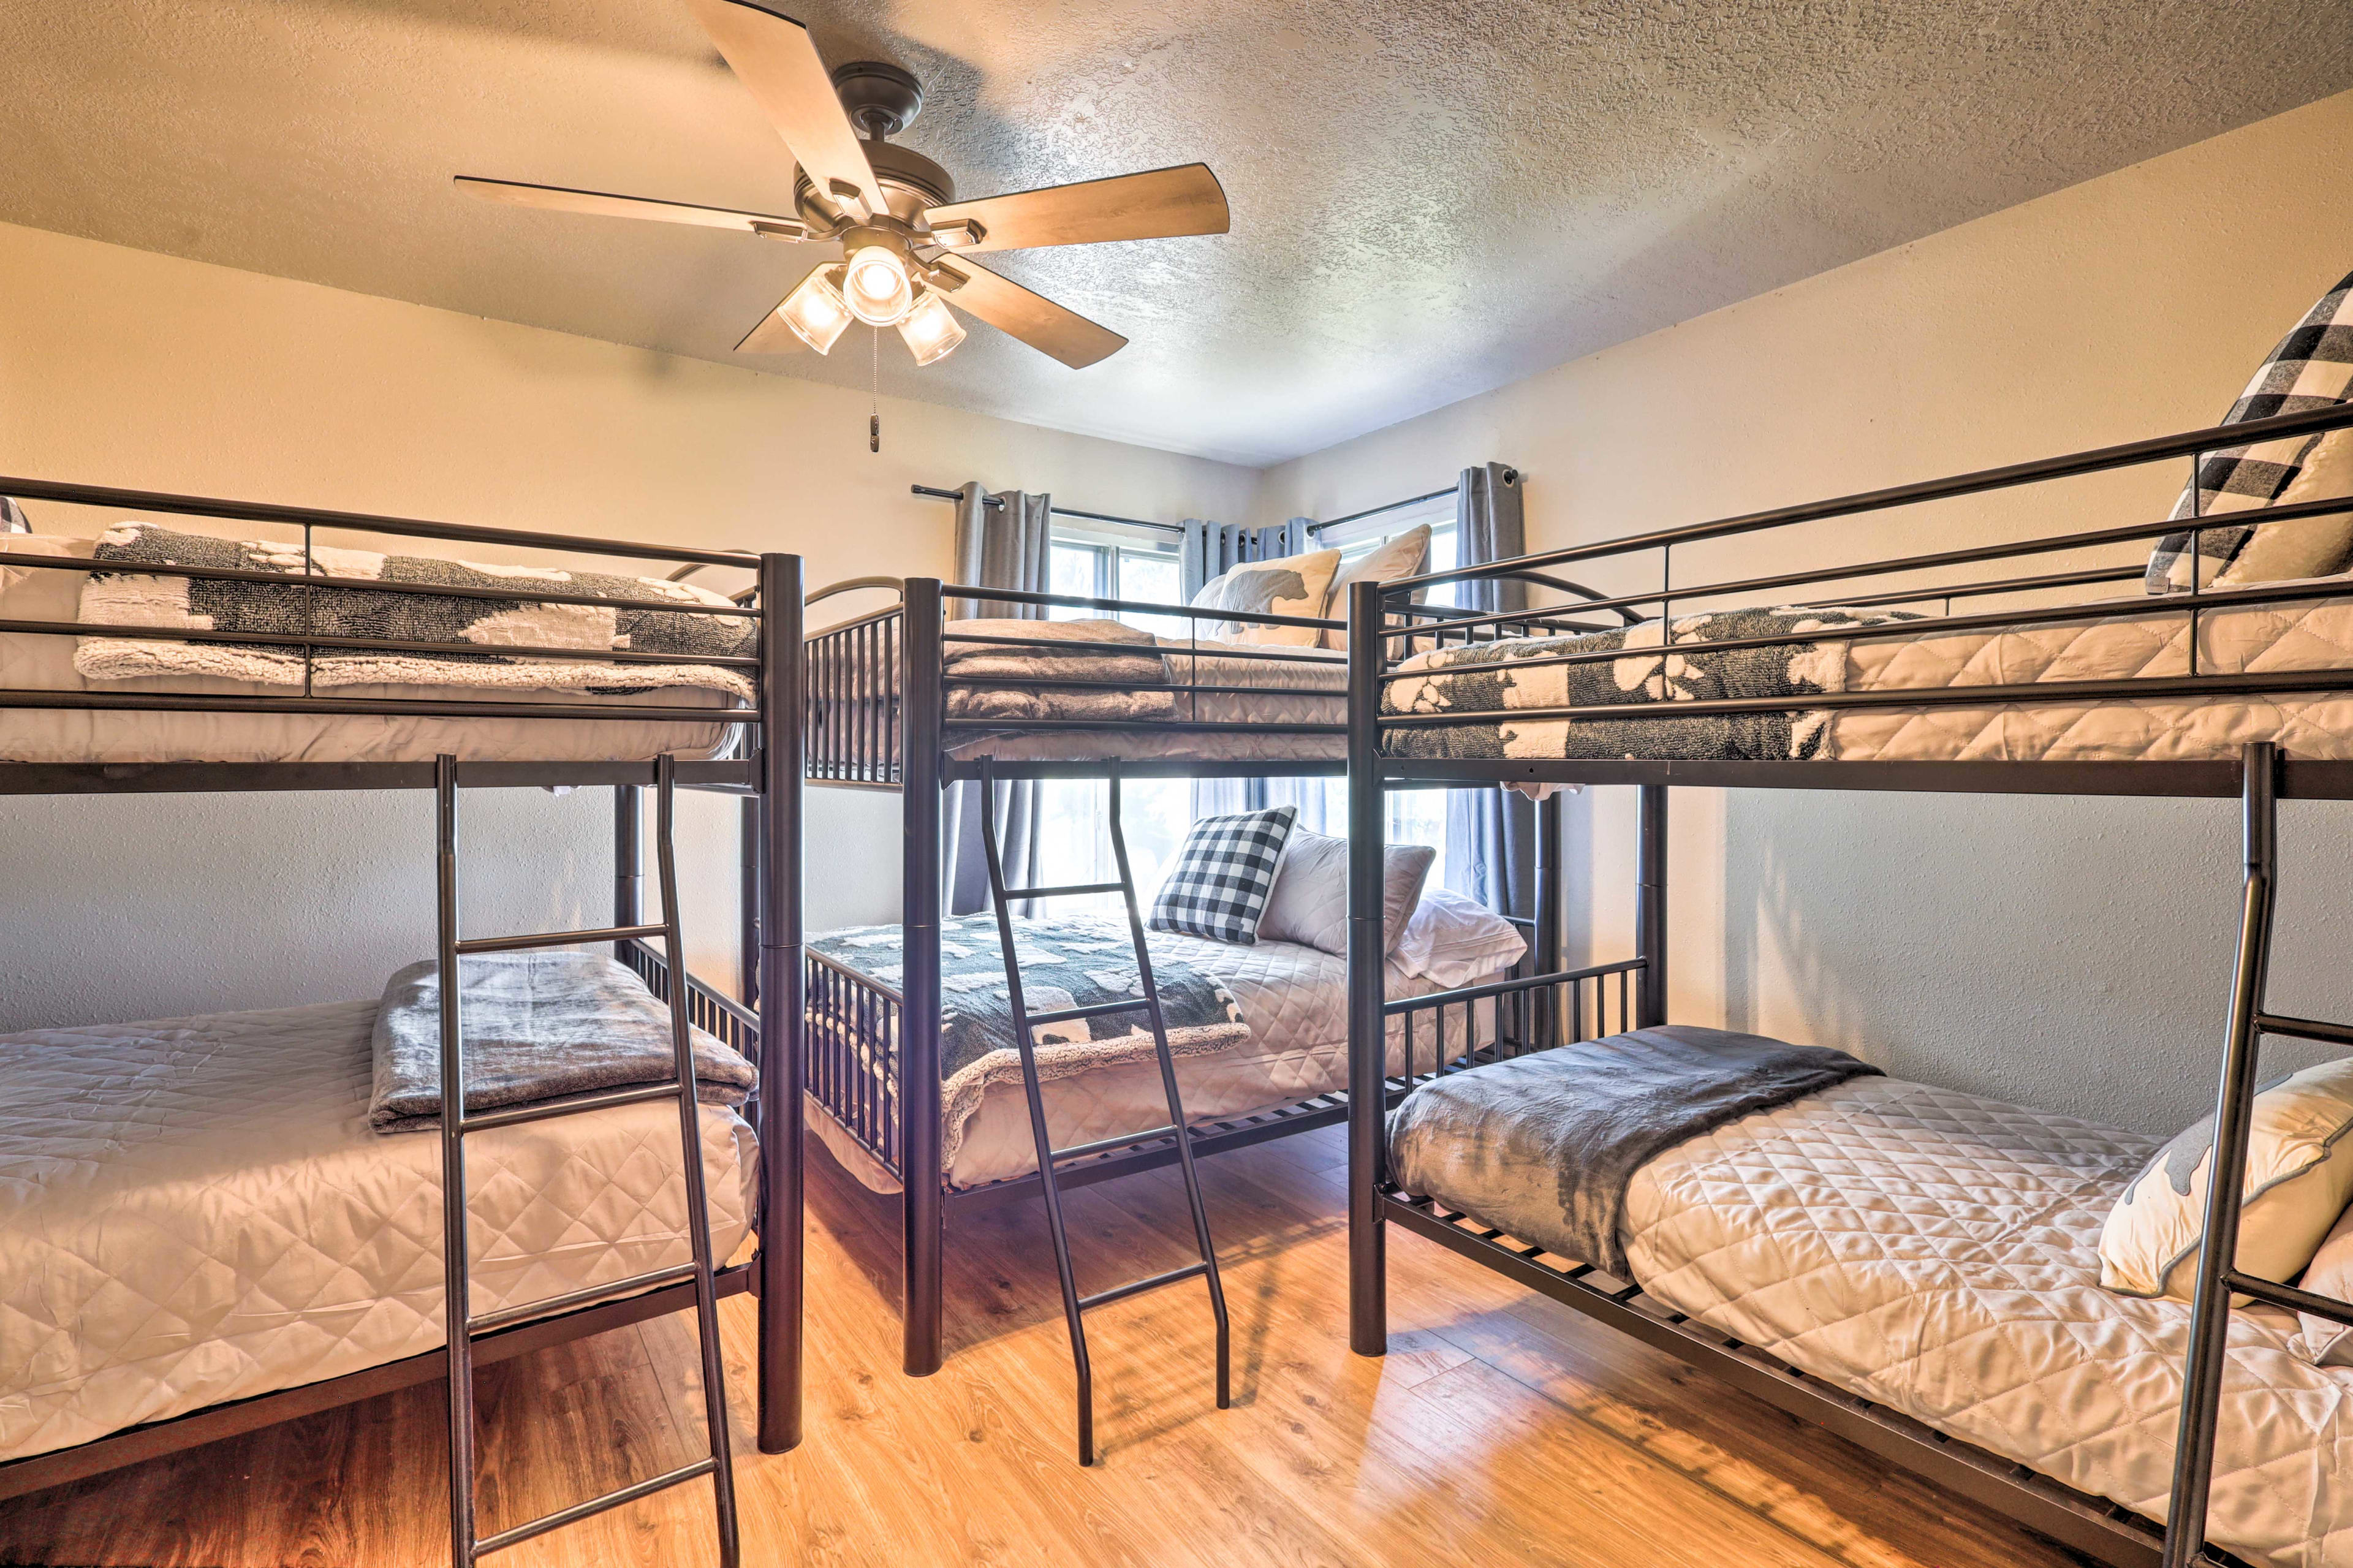 Bedroom 4 | 2 Full Bunk Beds | Twin Bunk Bed | 2nd Floor